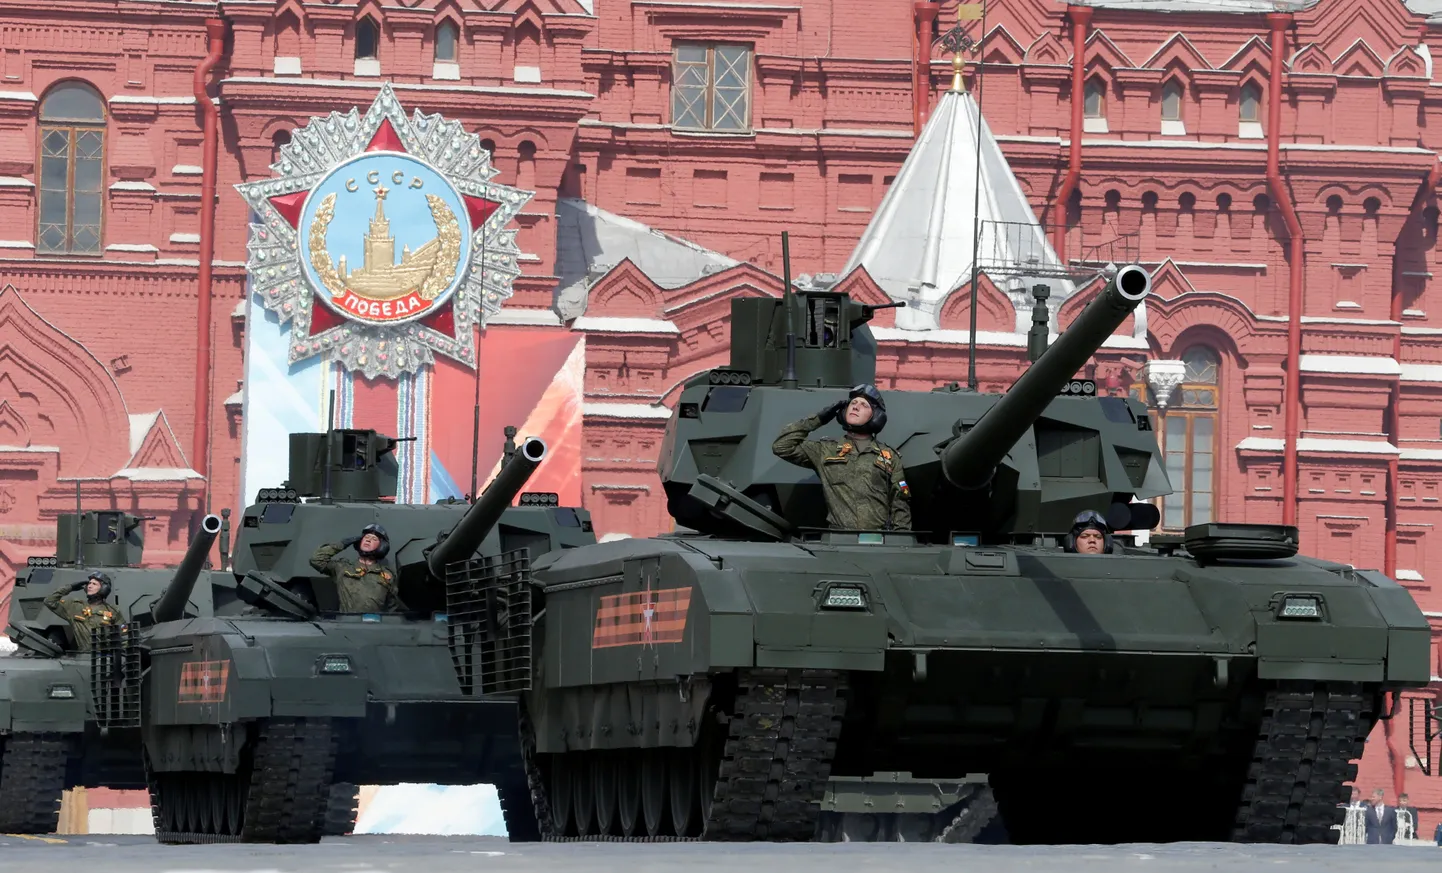 Vene tankid T-14 on uuel Armata platvormil, kuid peale paraadi pole neid mujal eriti nähtud.